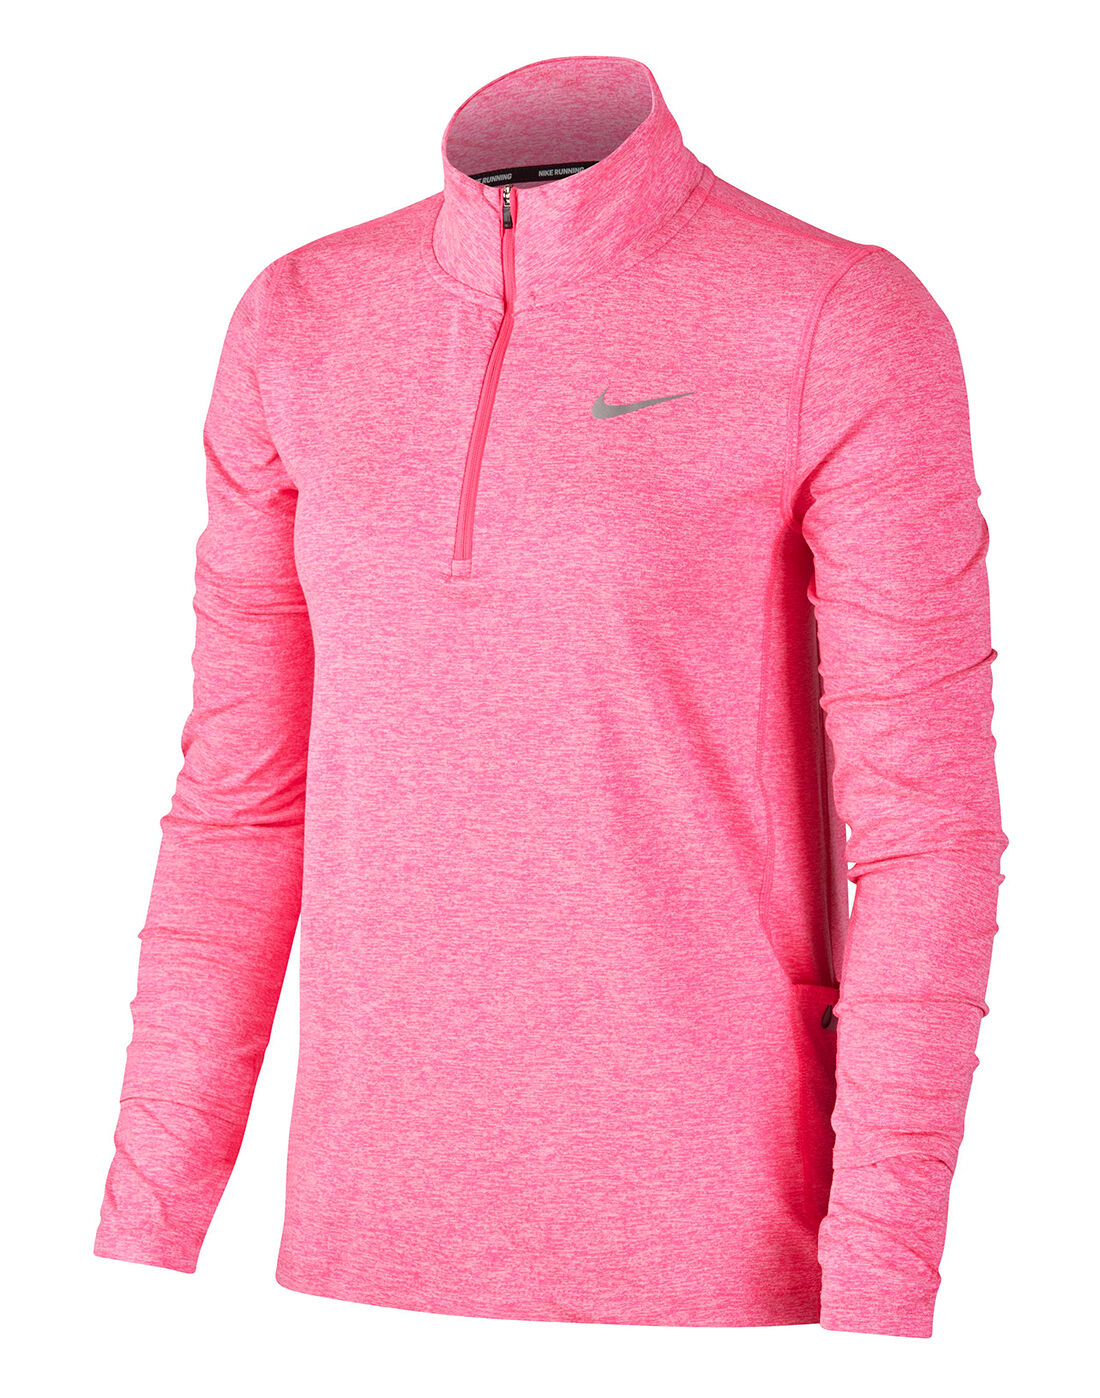 Nike Womens Element Half Zip Top - Pink 